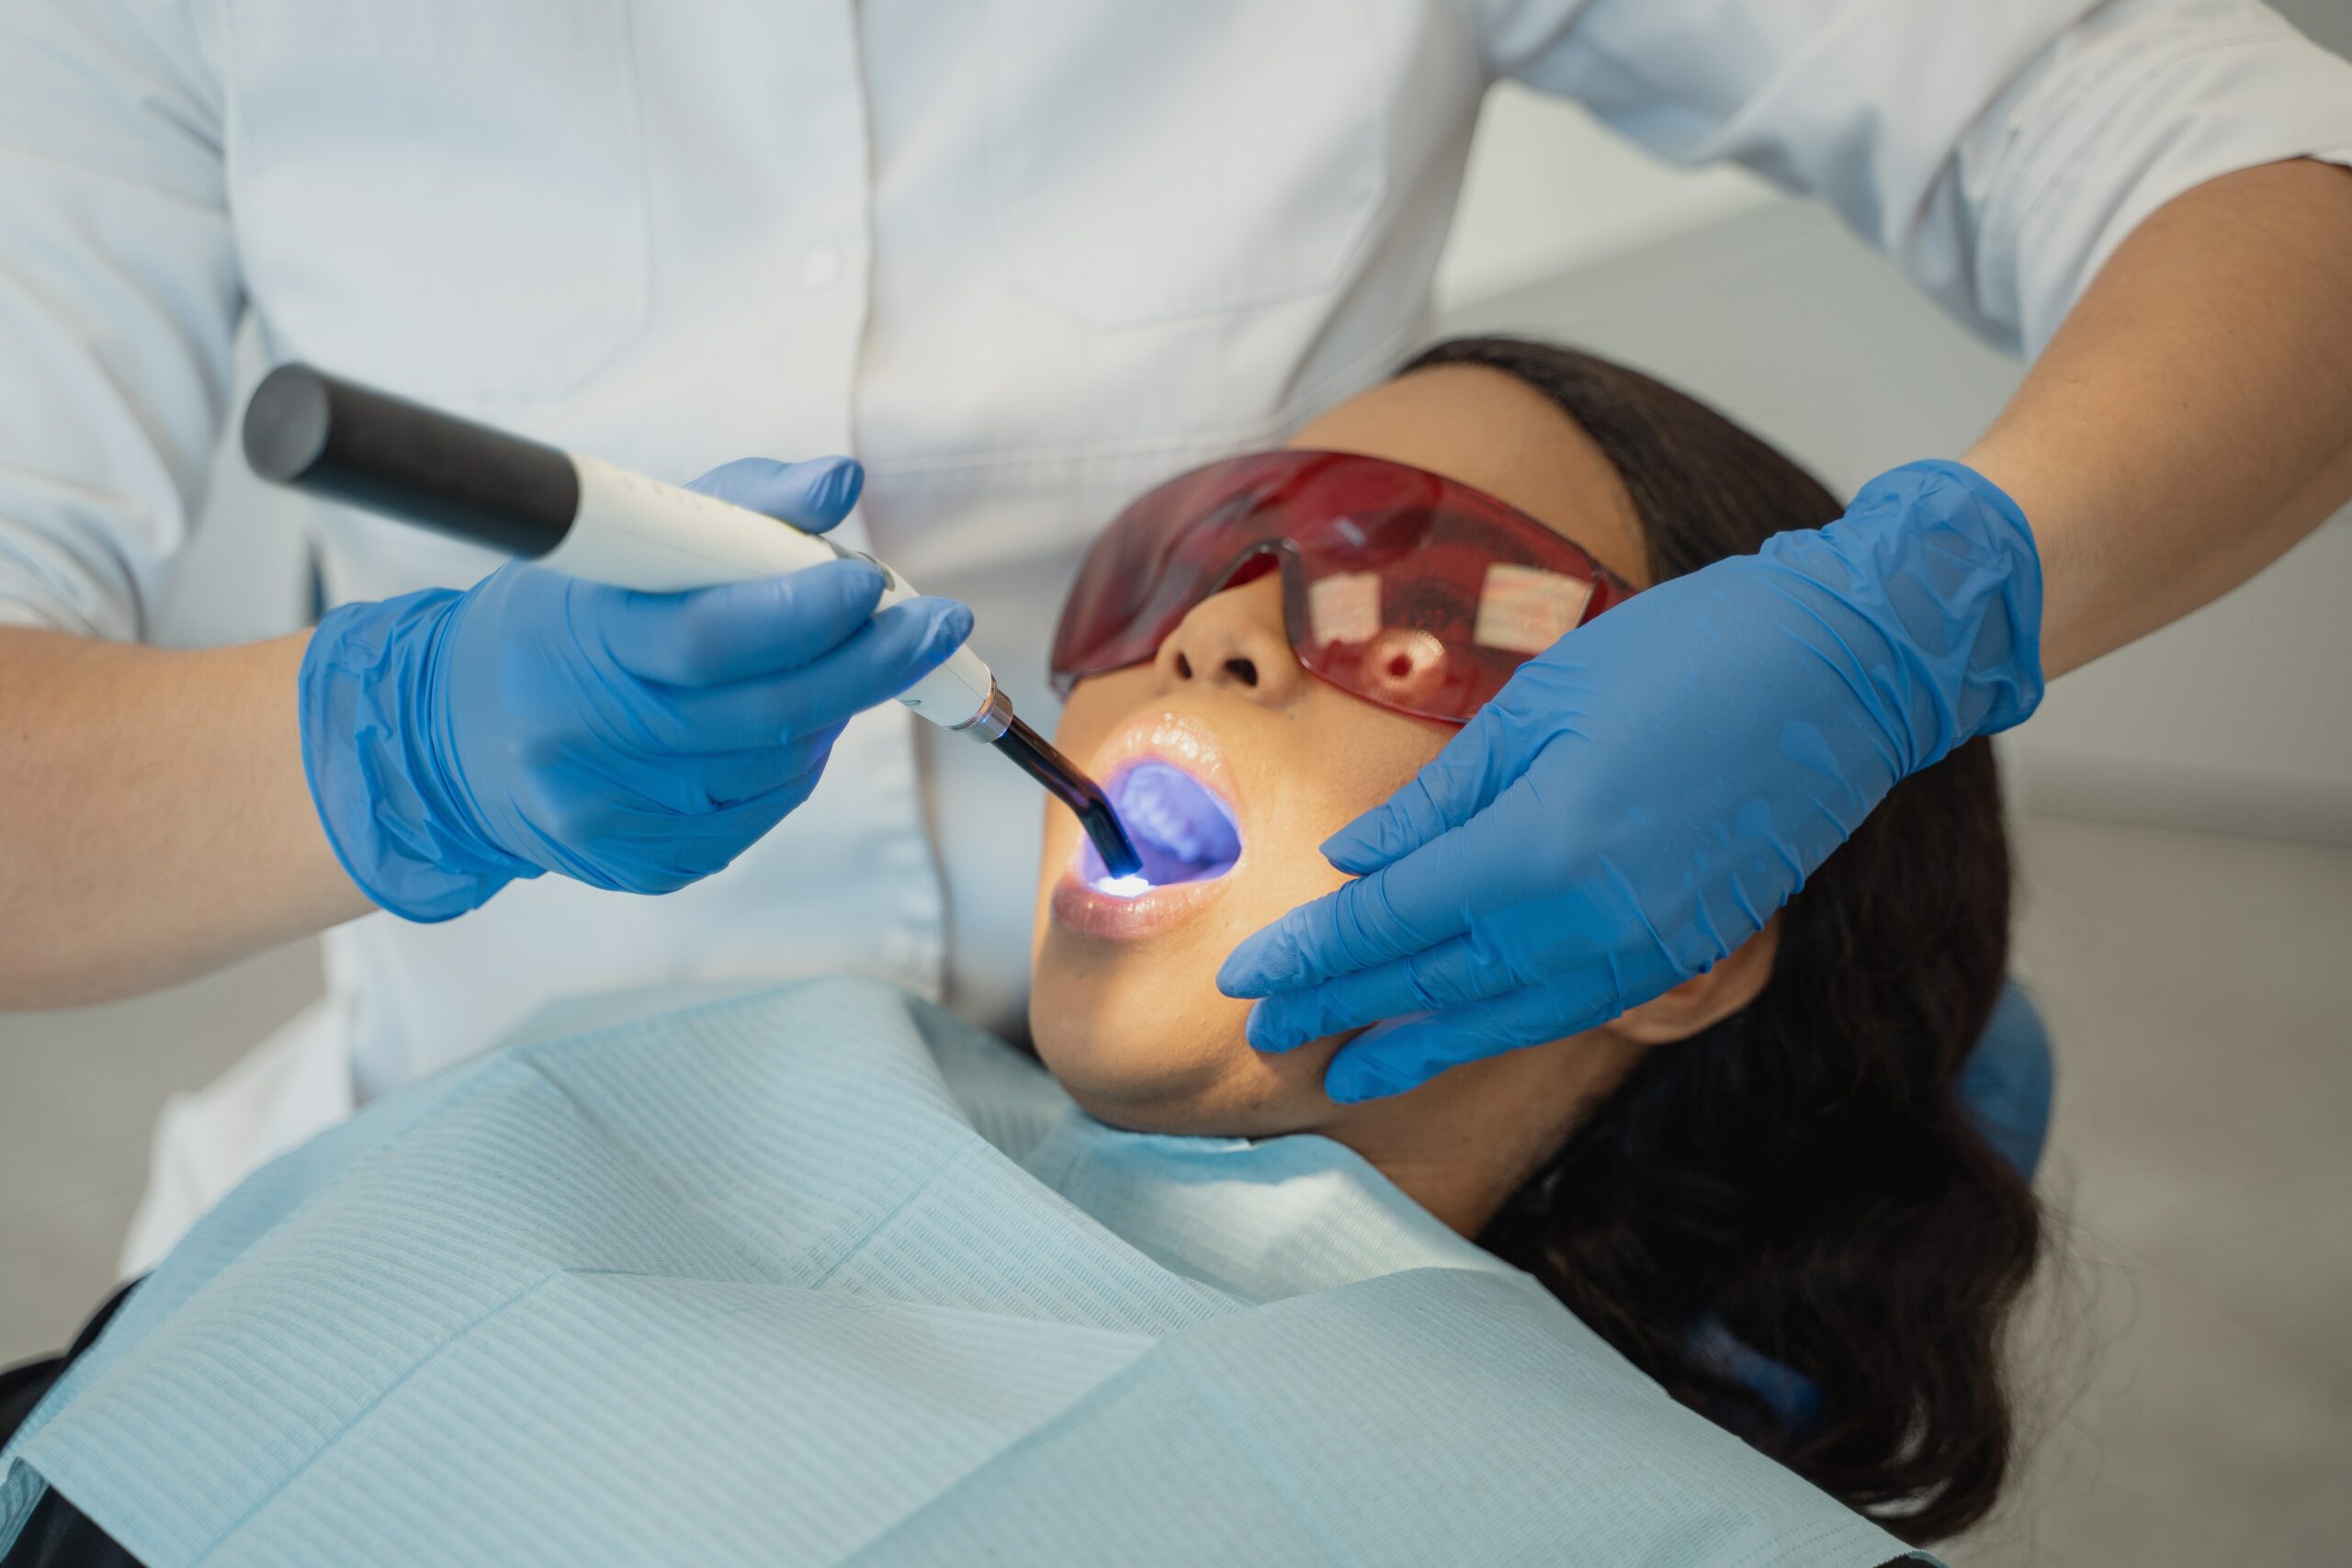 exames para aparelho ortodontico